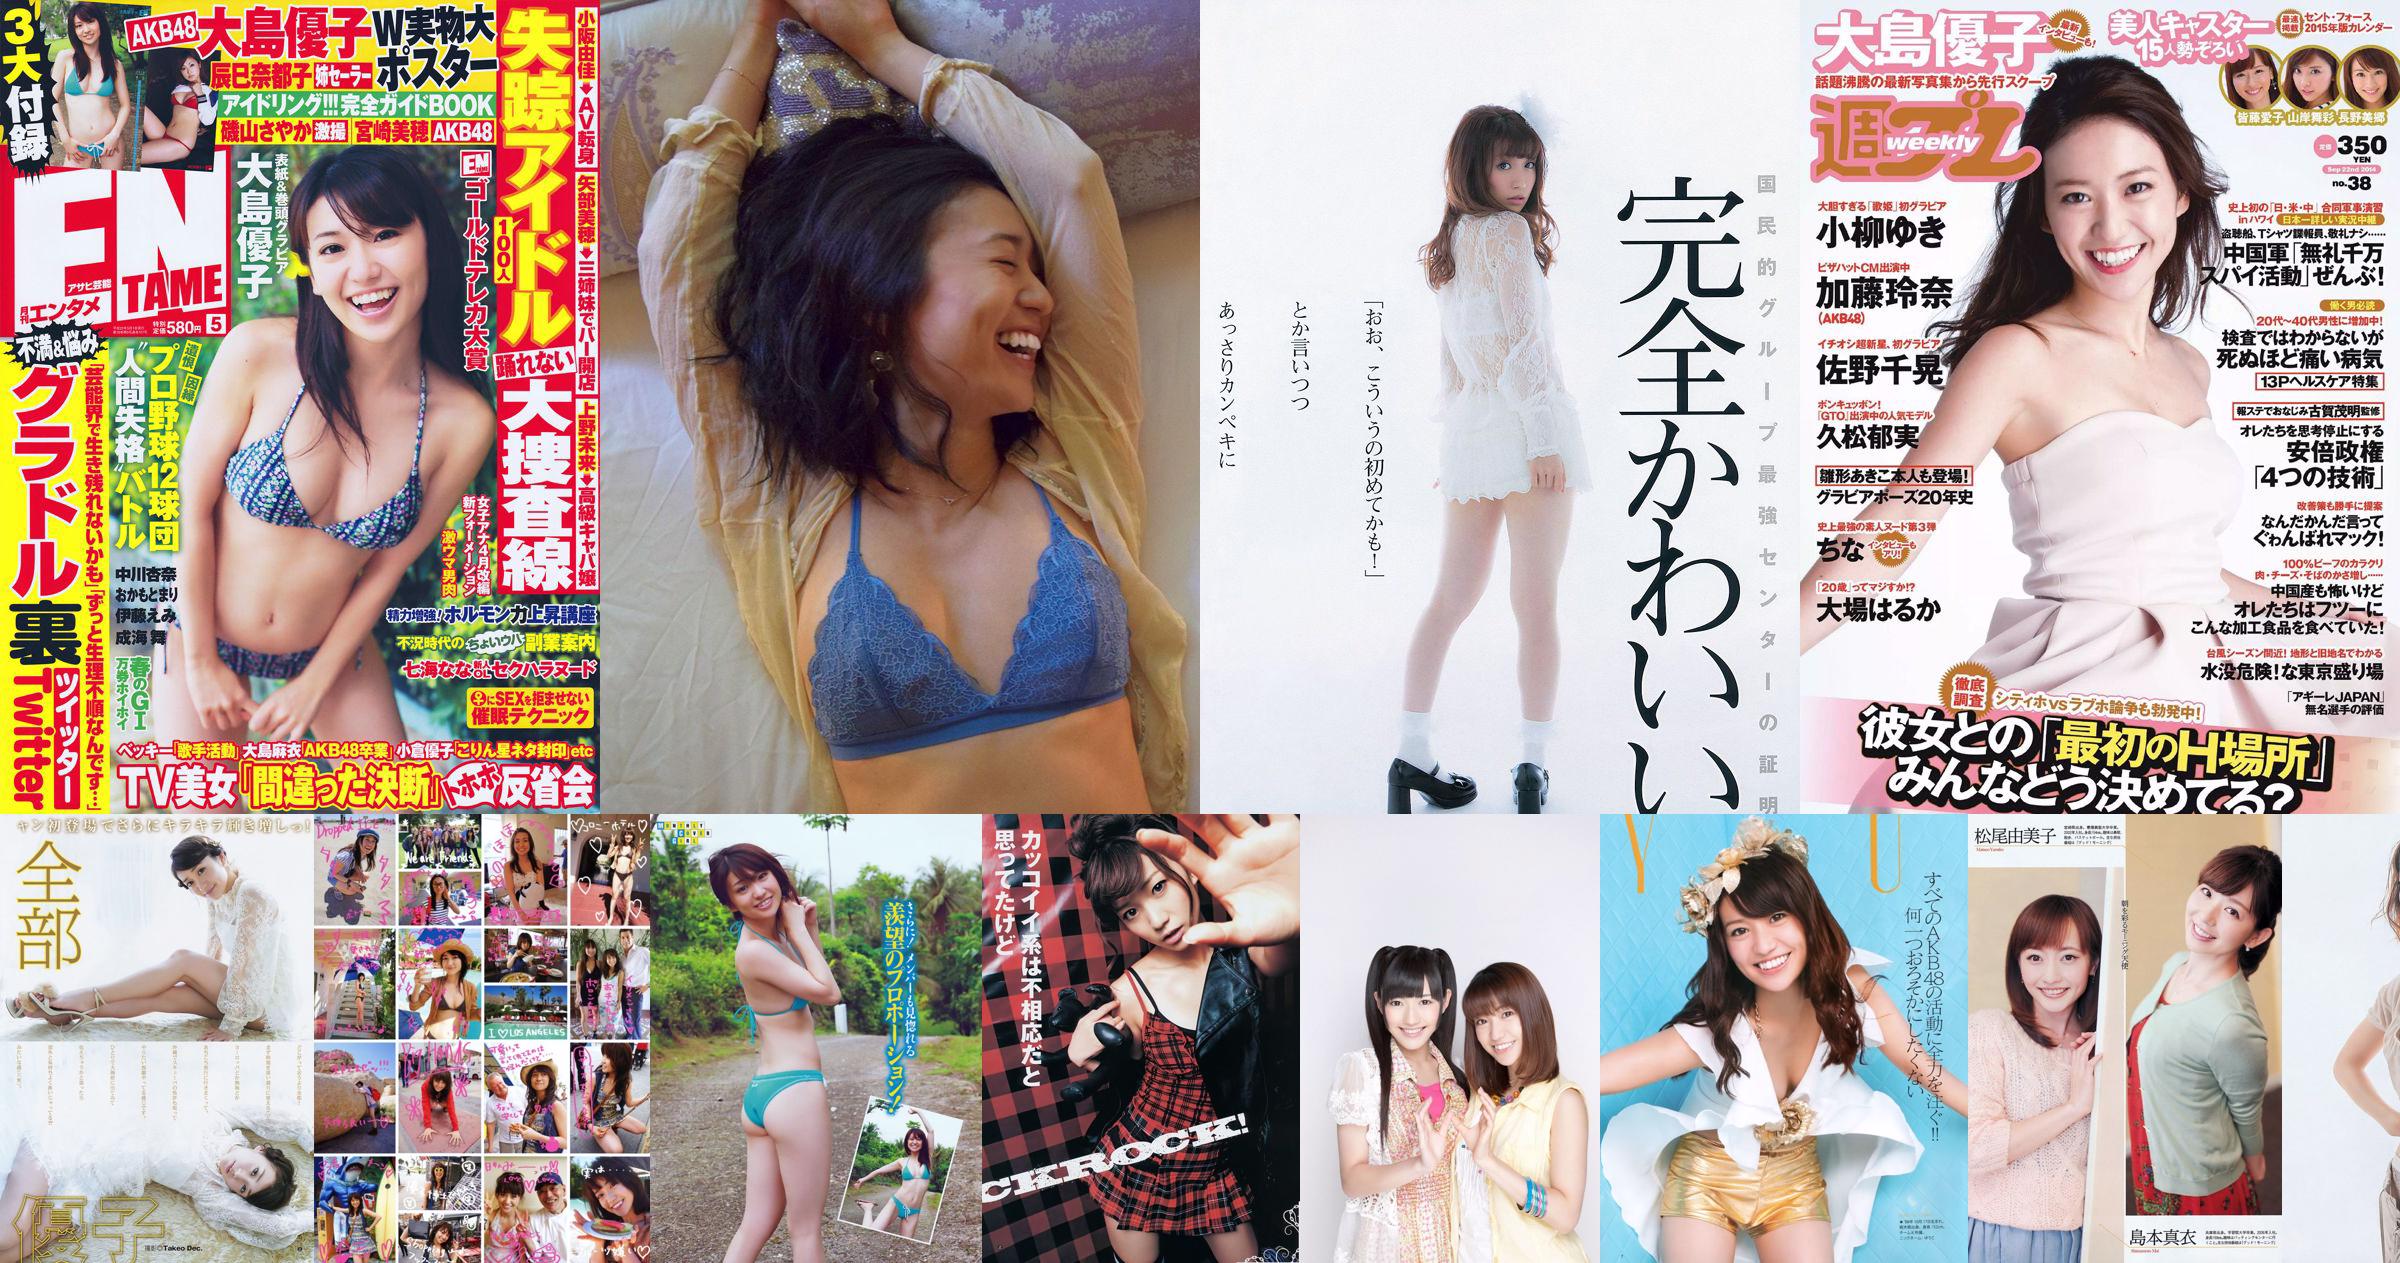 Oshima Yuko, Watanabe Mayu, Takanashi Rin, Iriyama Anna, Eagle Feather Mio, Matsuo Irijia, Shimizu Fumika [Wekelijkse Playboy] 2013 No.22 Photo Magazine No.b29f7d Pagina 1